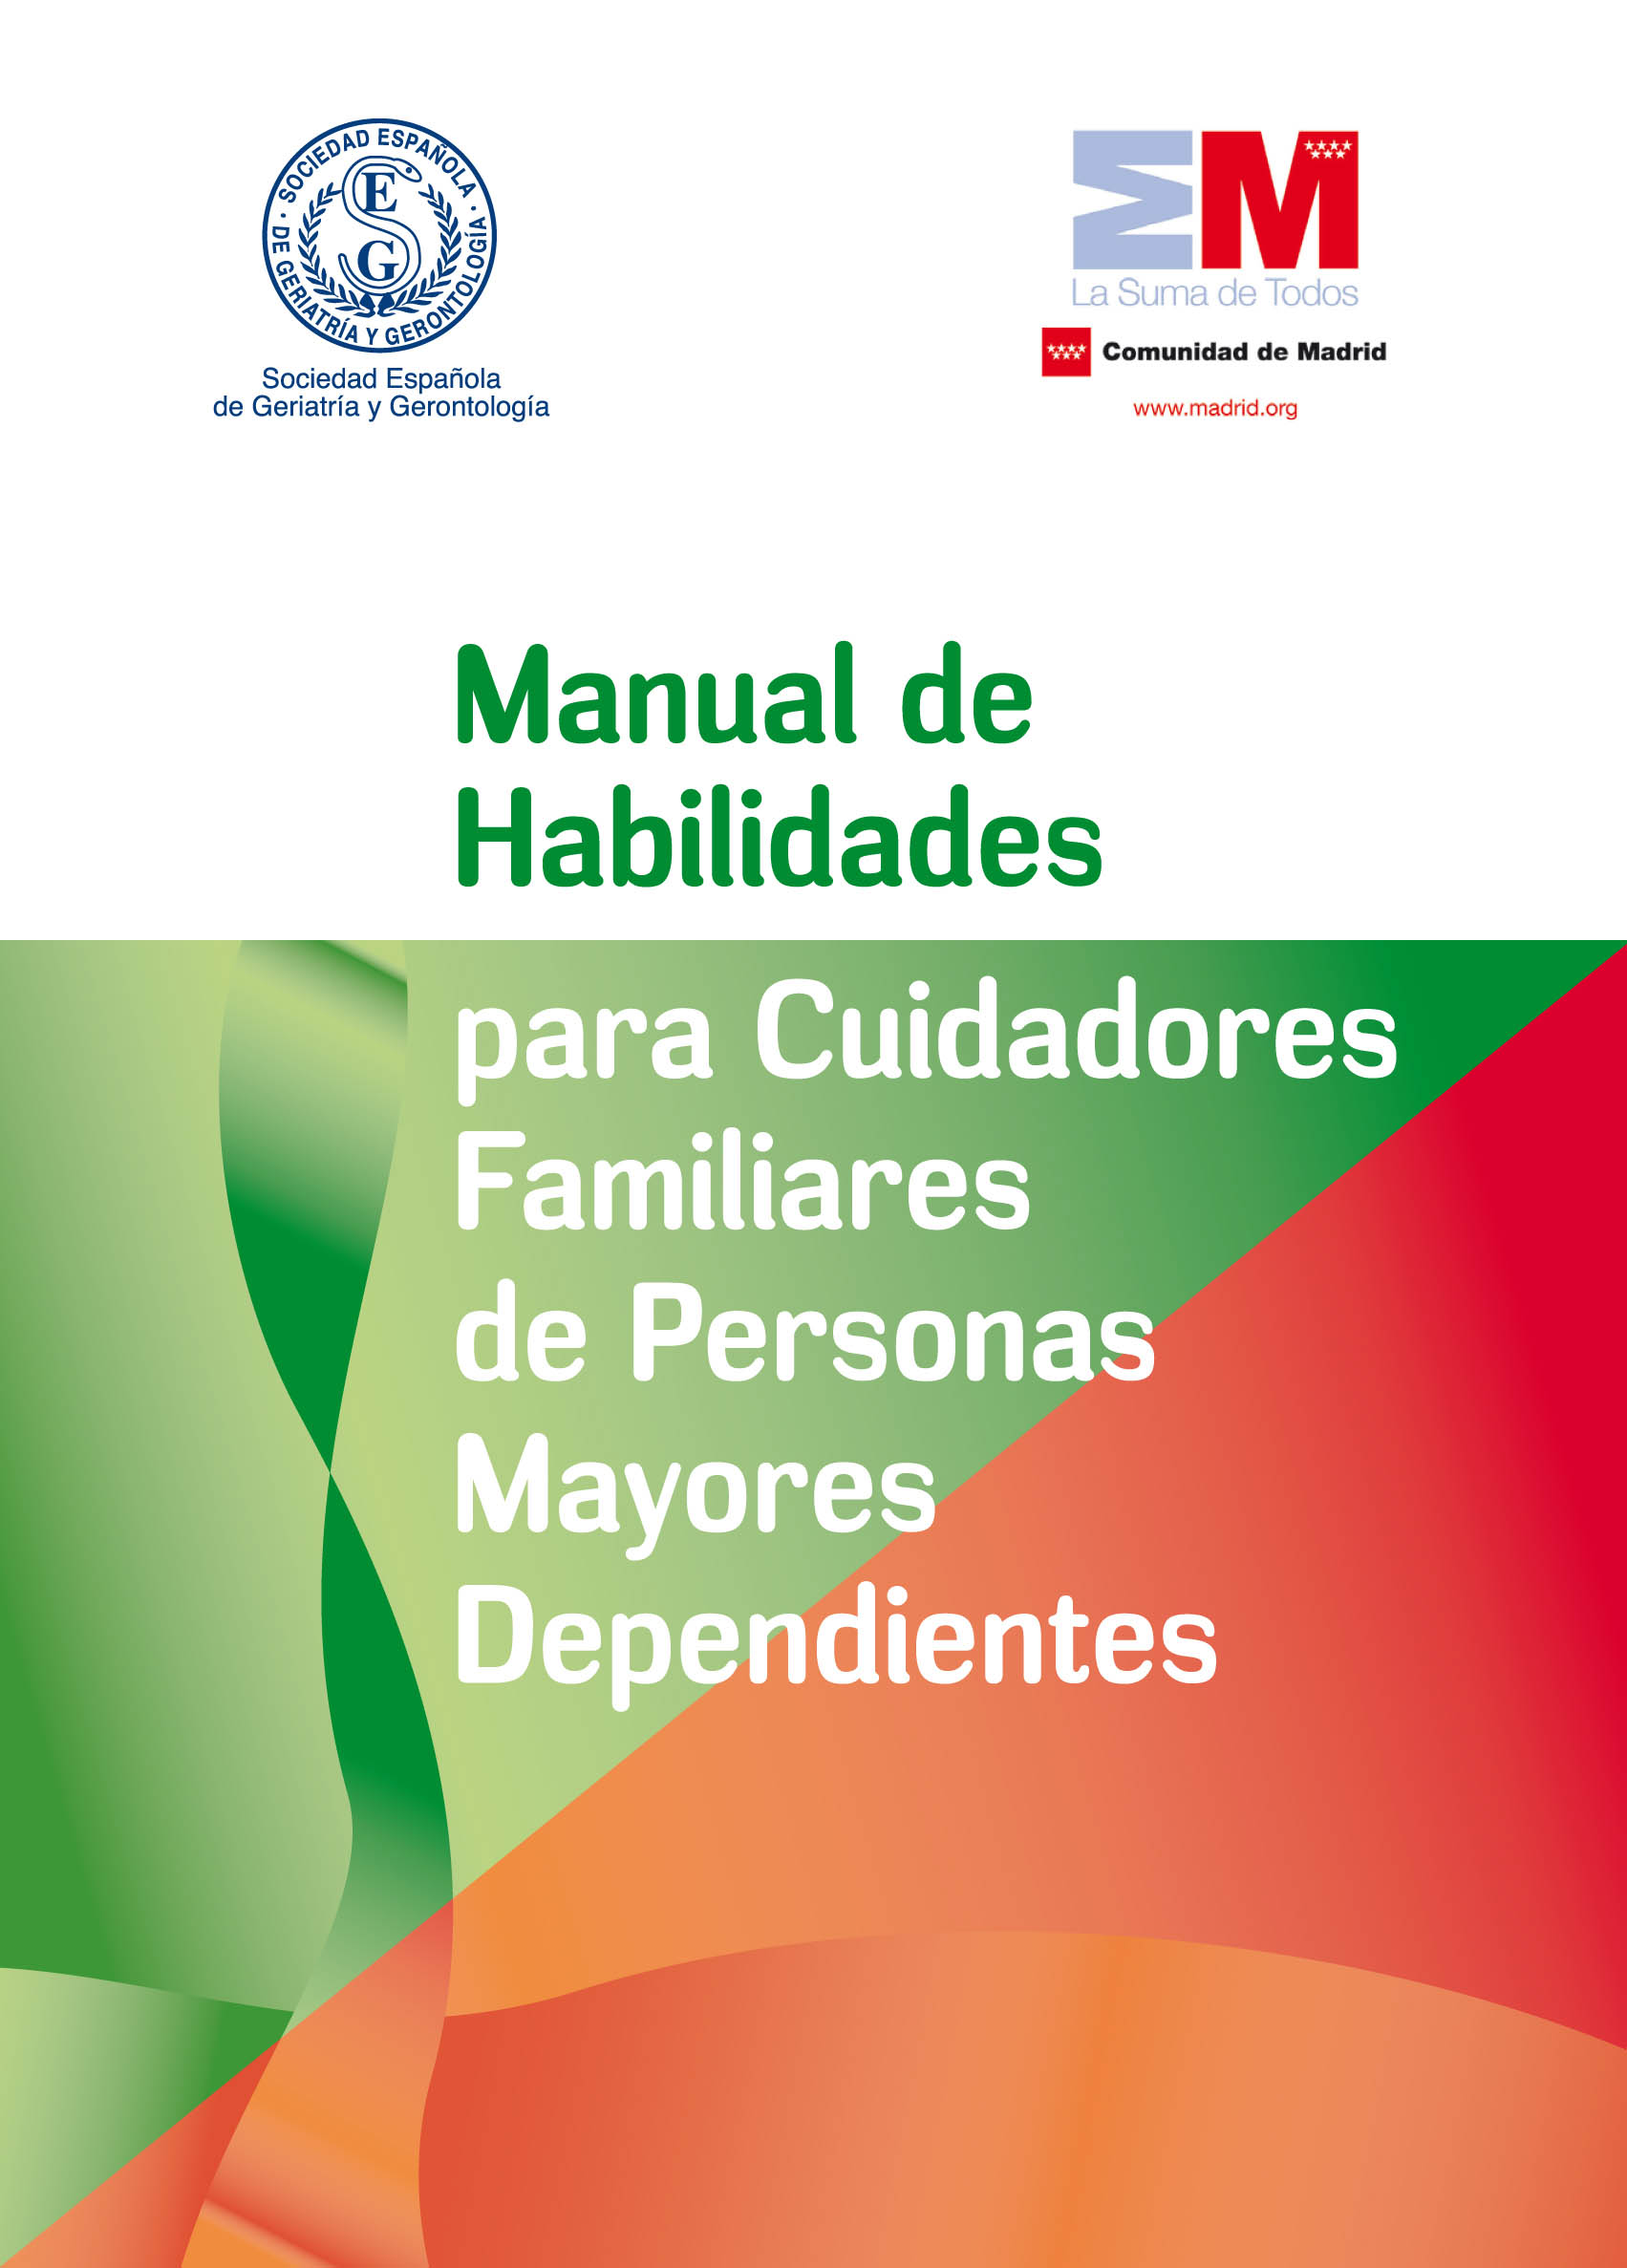 Manual de habilidades para cuidadores familiares de personas mayores dependientes